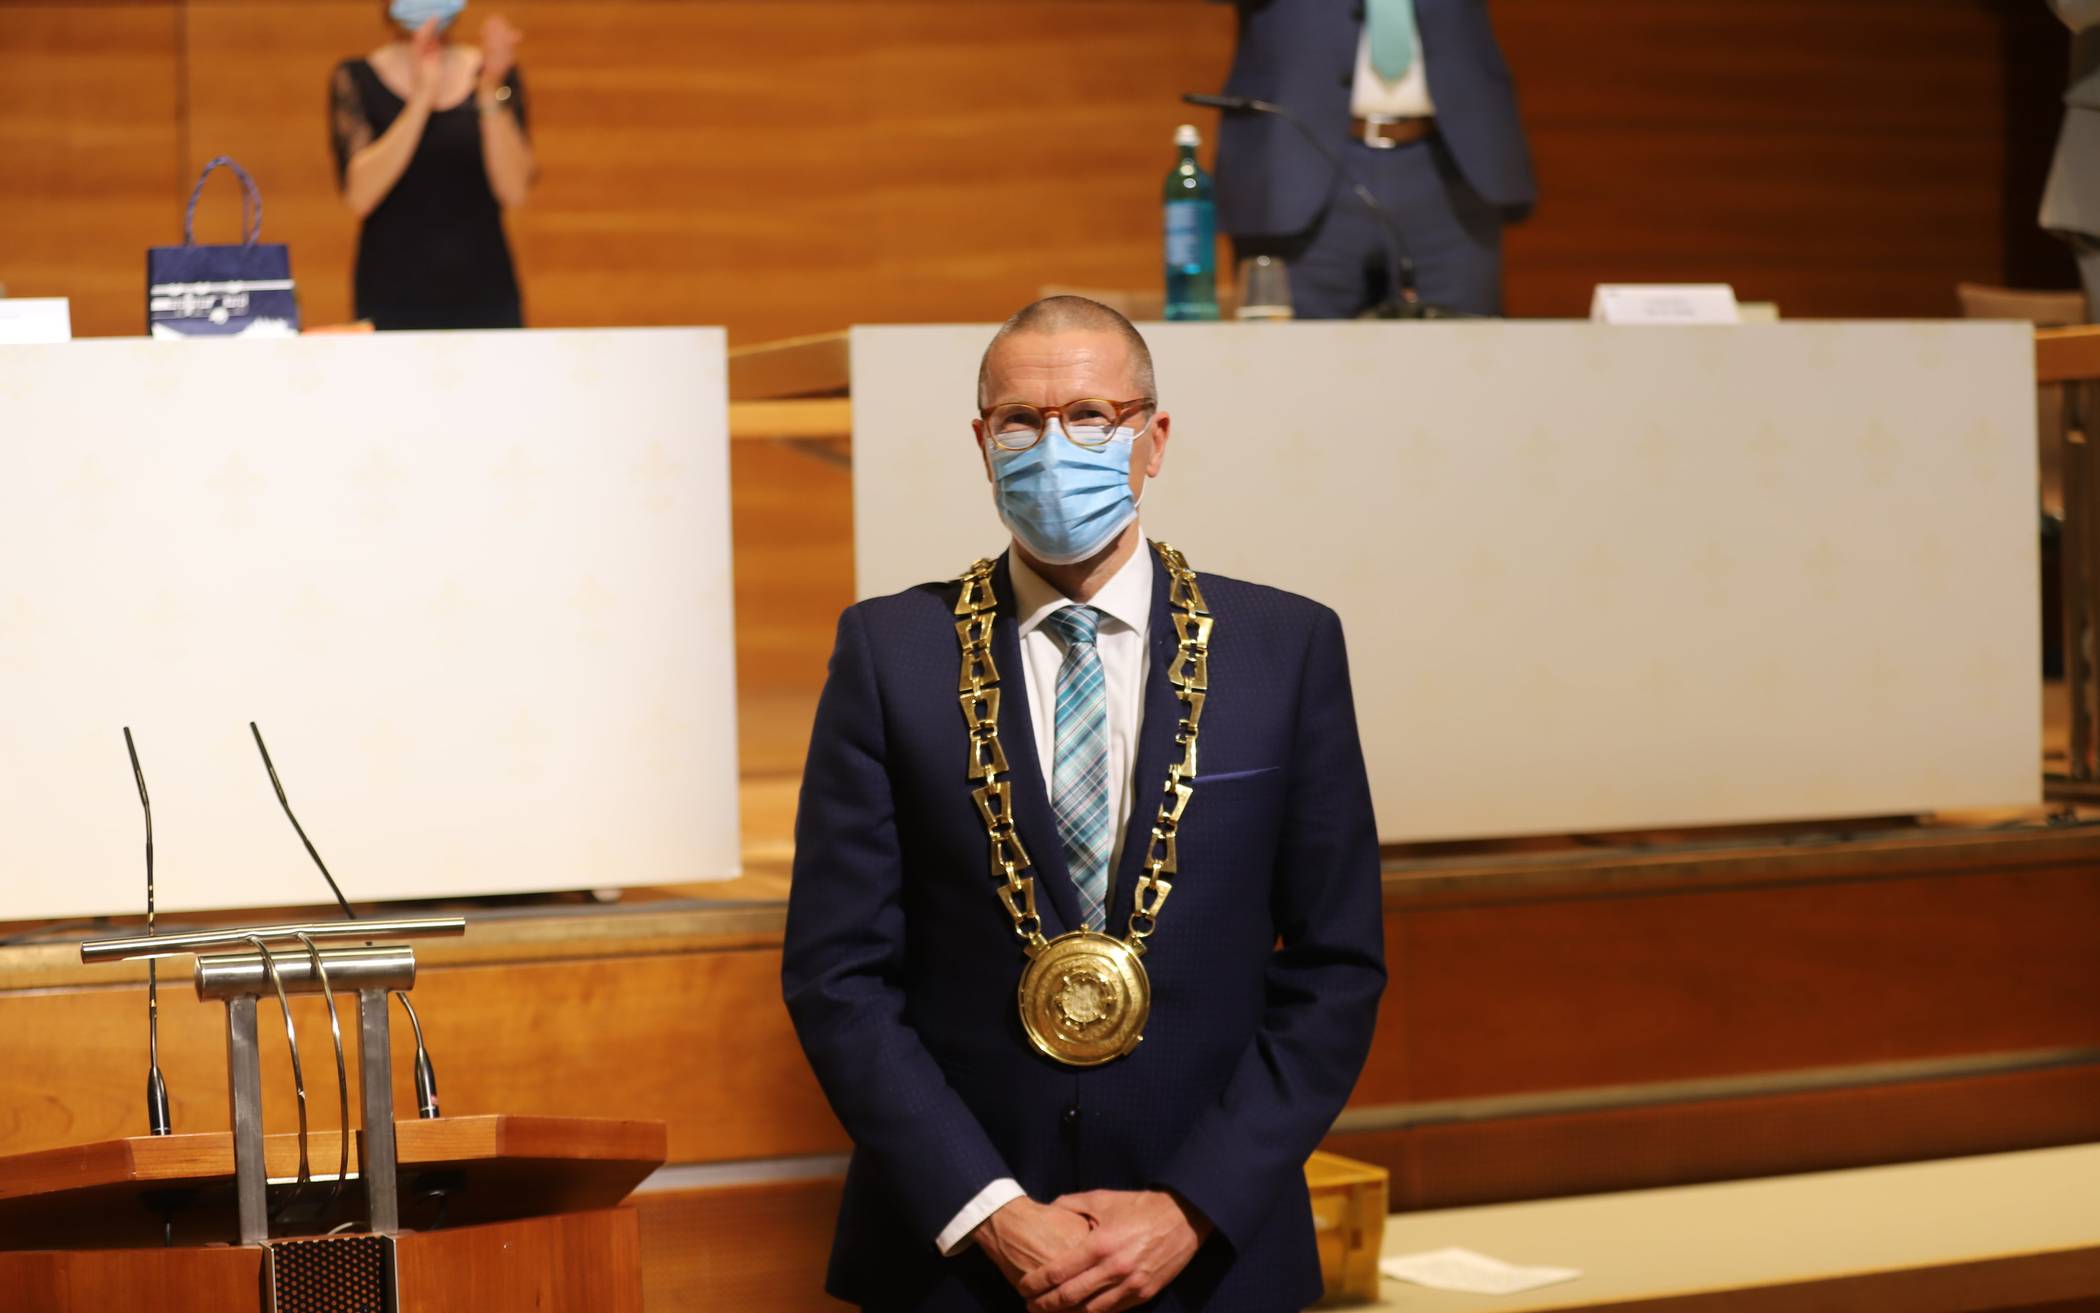  Oberbürgermeister Uwe Schneidewind mit Maske. 